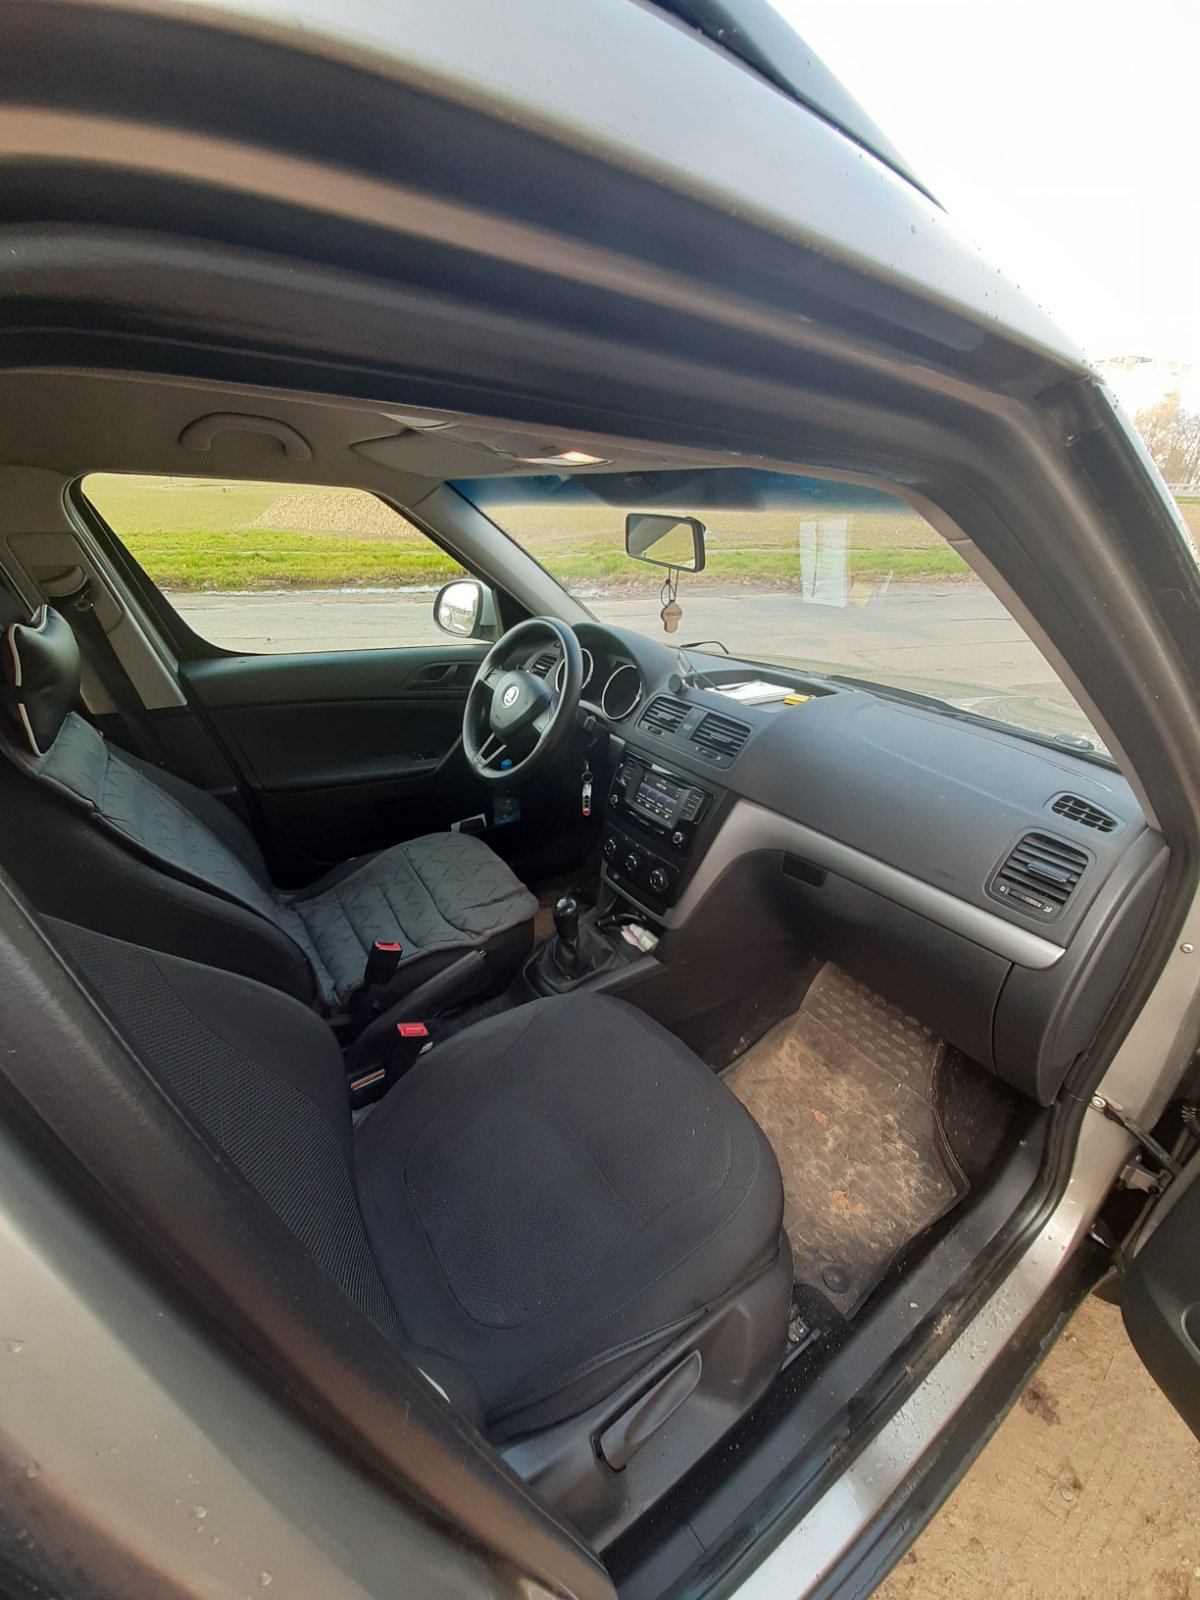 Продам автомобиль Skoda Yeti 2016 г.в. - фотография